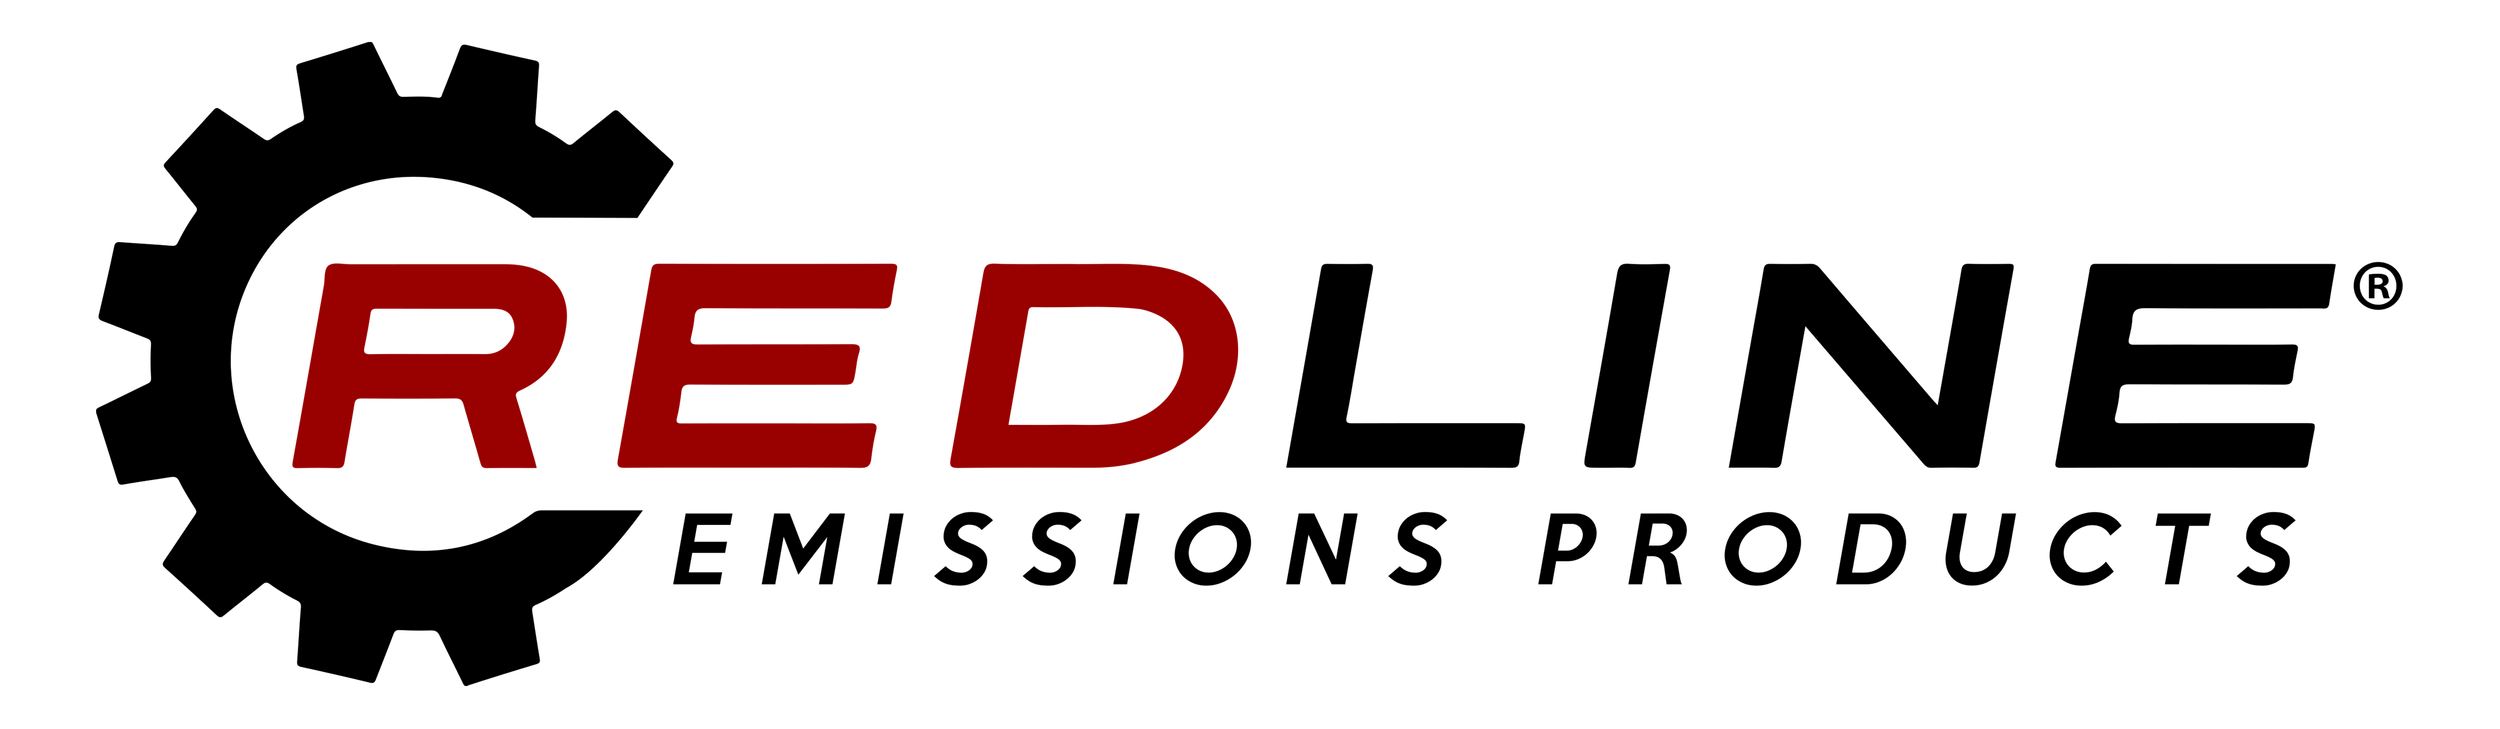 Redline Logo Black & Red 6-18_Lrg (1).png